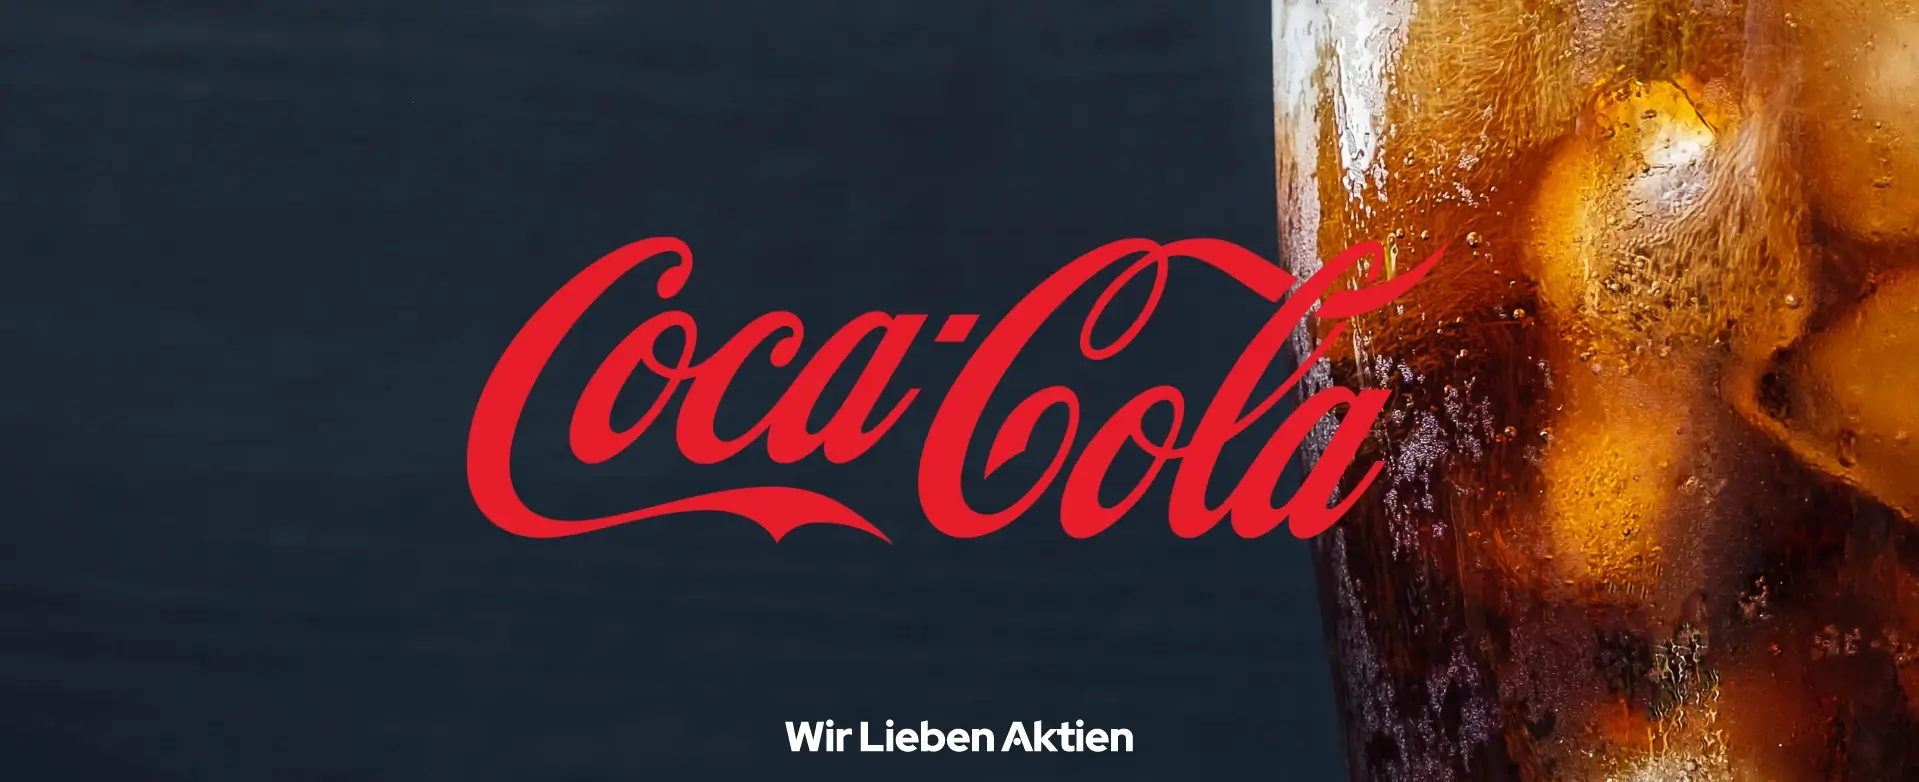 Coca Cola Aktie Analyse Einleitungsbild